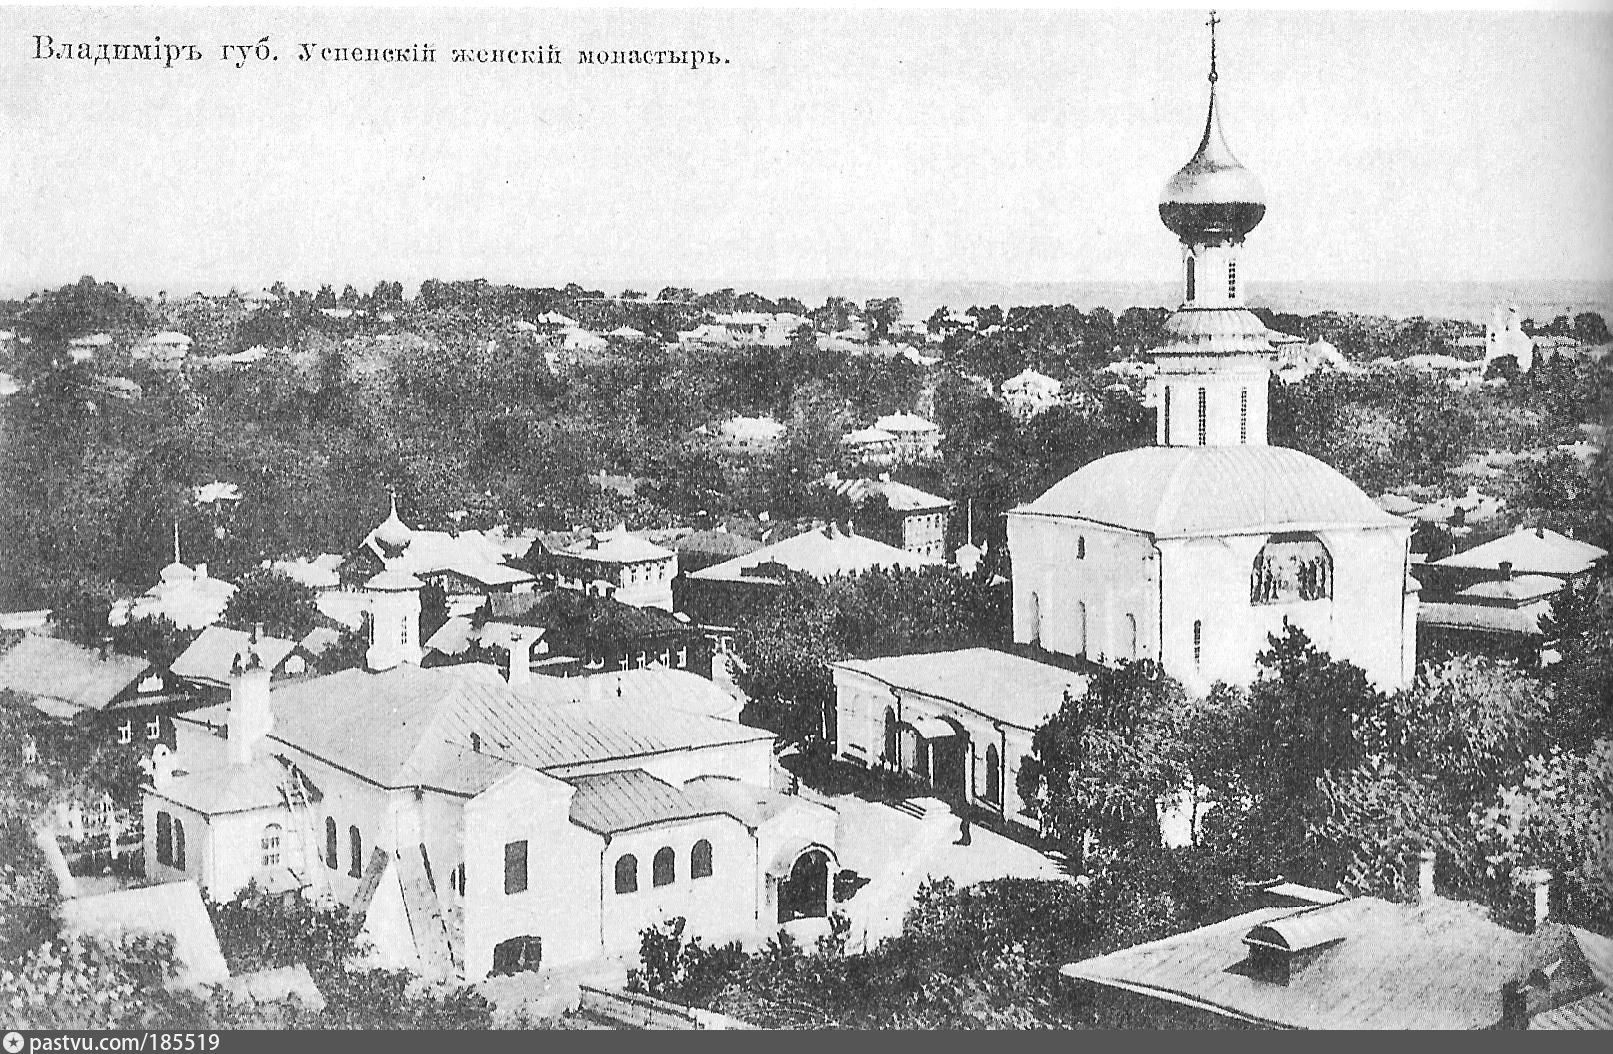 успенский собор княгинина монастыря во владимире